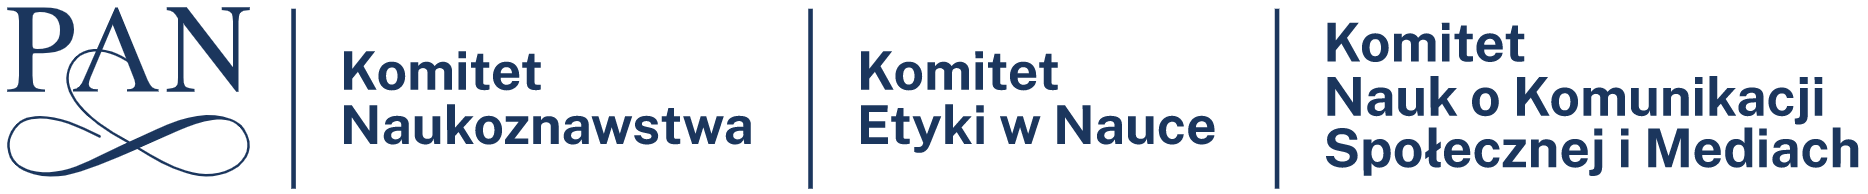 Logo Polskiej Akademi Nauk obok nazwy komitetu Naukoznawstwa Etyki w Nauce  i Nauk o Komunikacji Spełecznej i Mediach